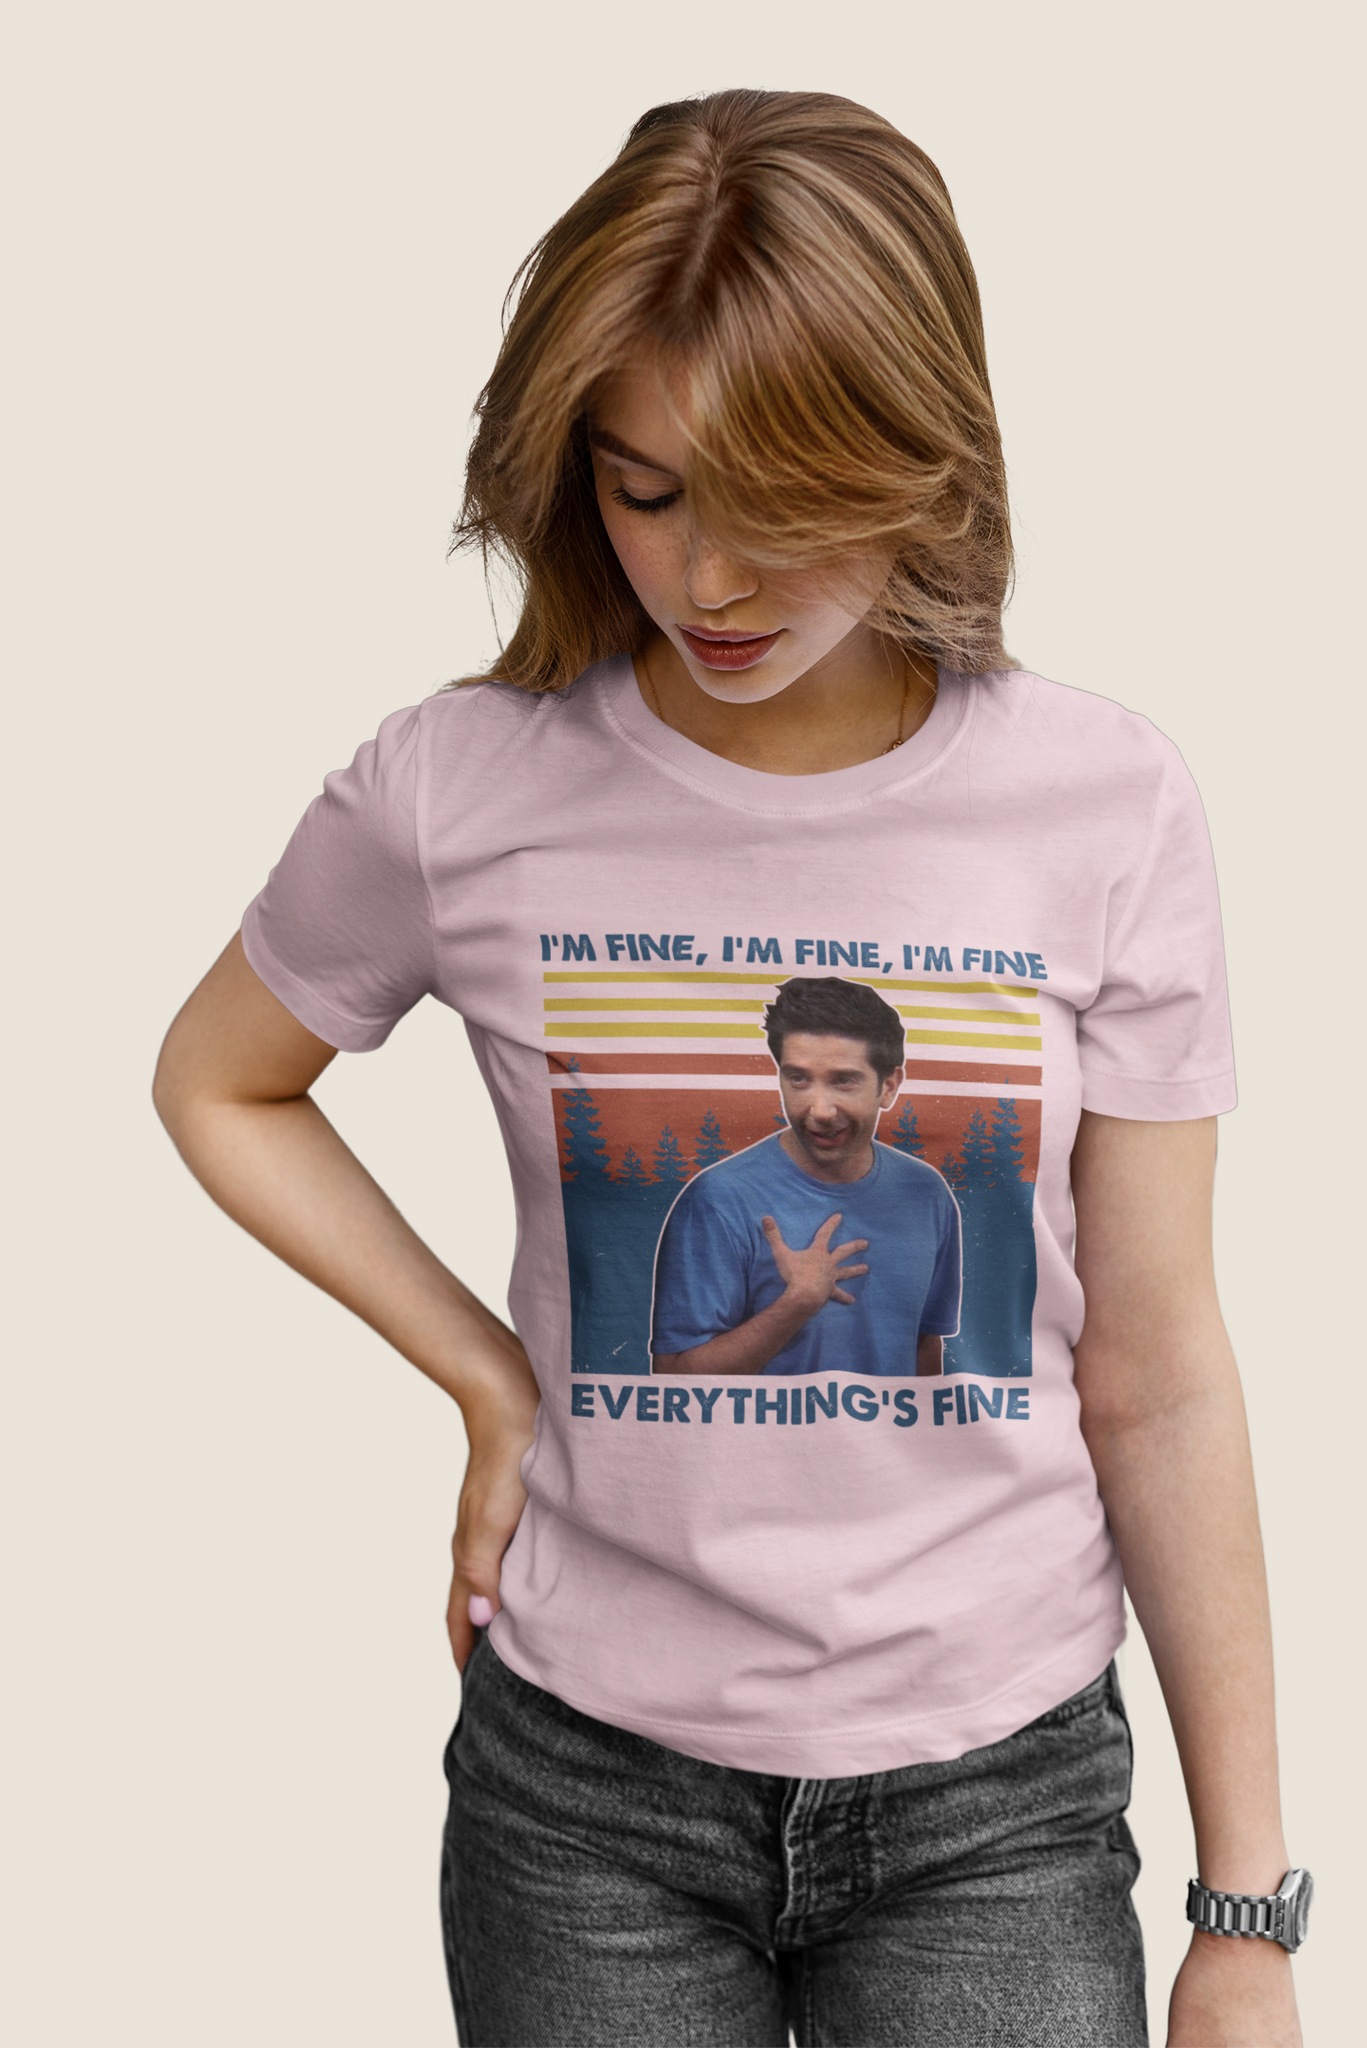 Friends TV Show Vintage T Shirt, Friends Shirt, Ross Geller Tshirt, Im Fine Everythings Fine T Shirt